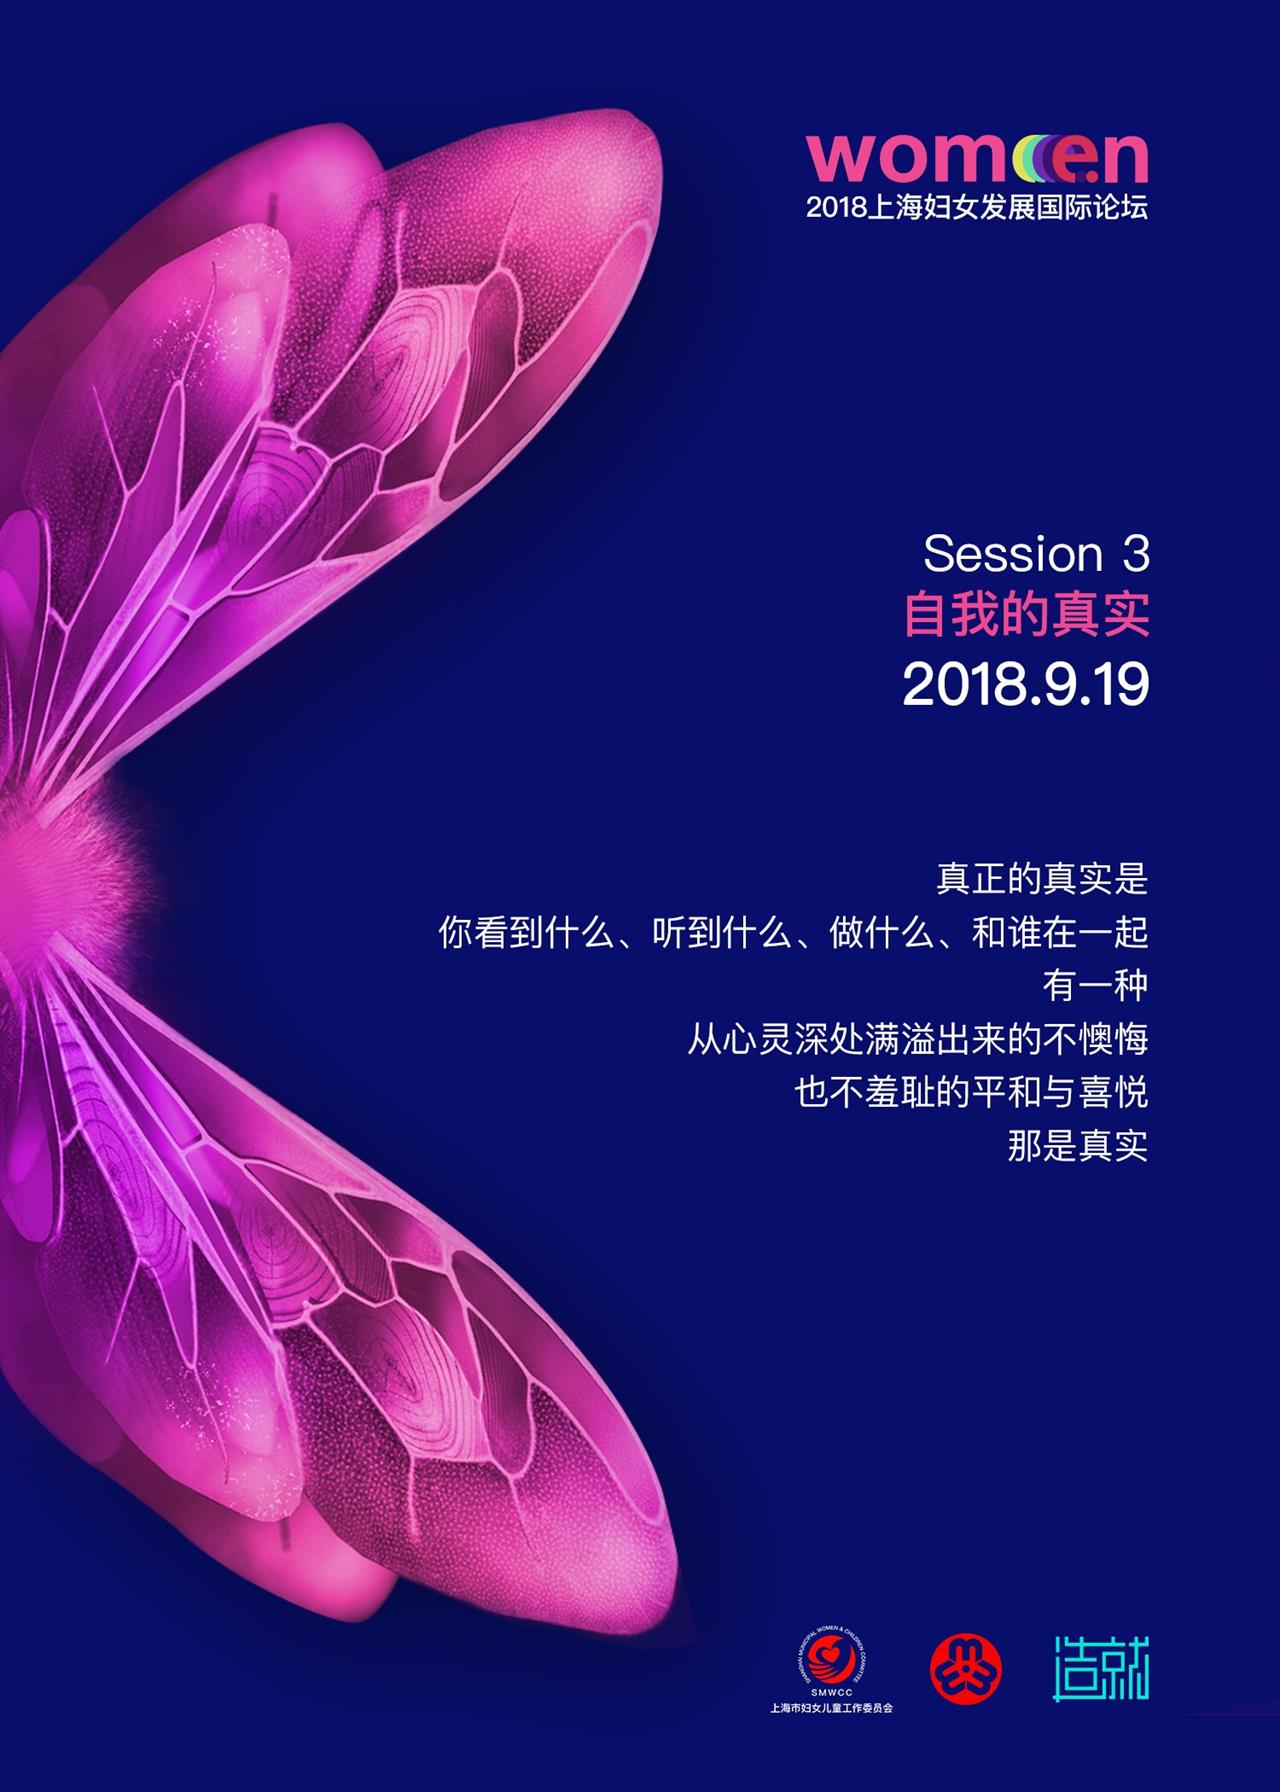 2018上海妇女发展国际论坛